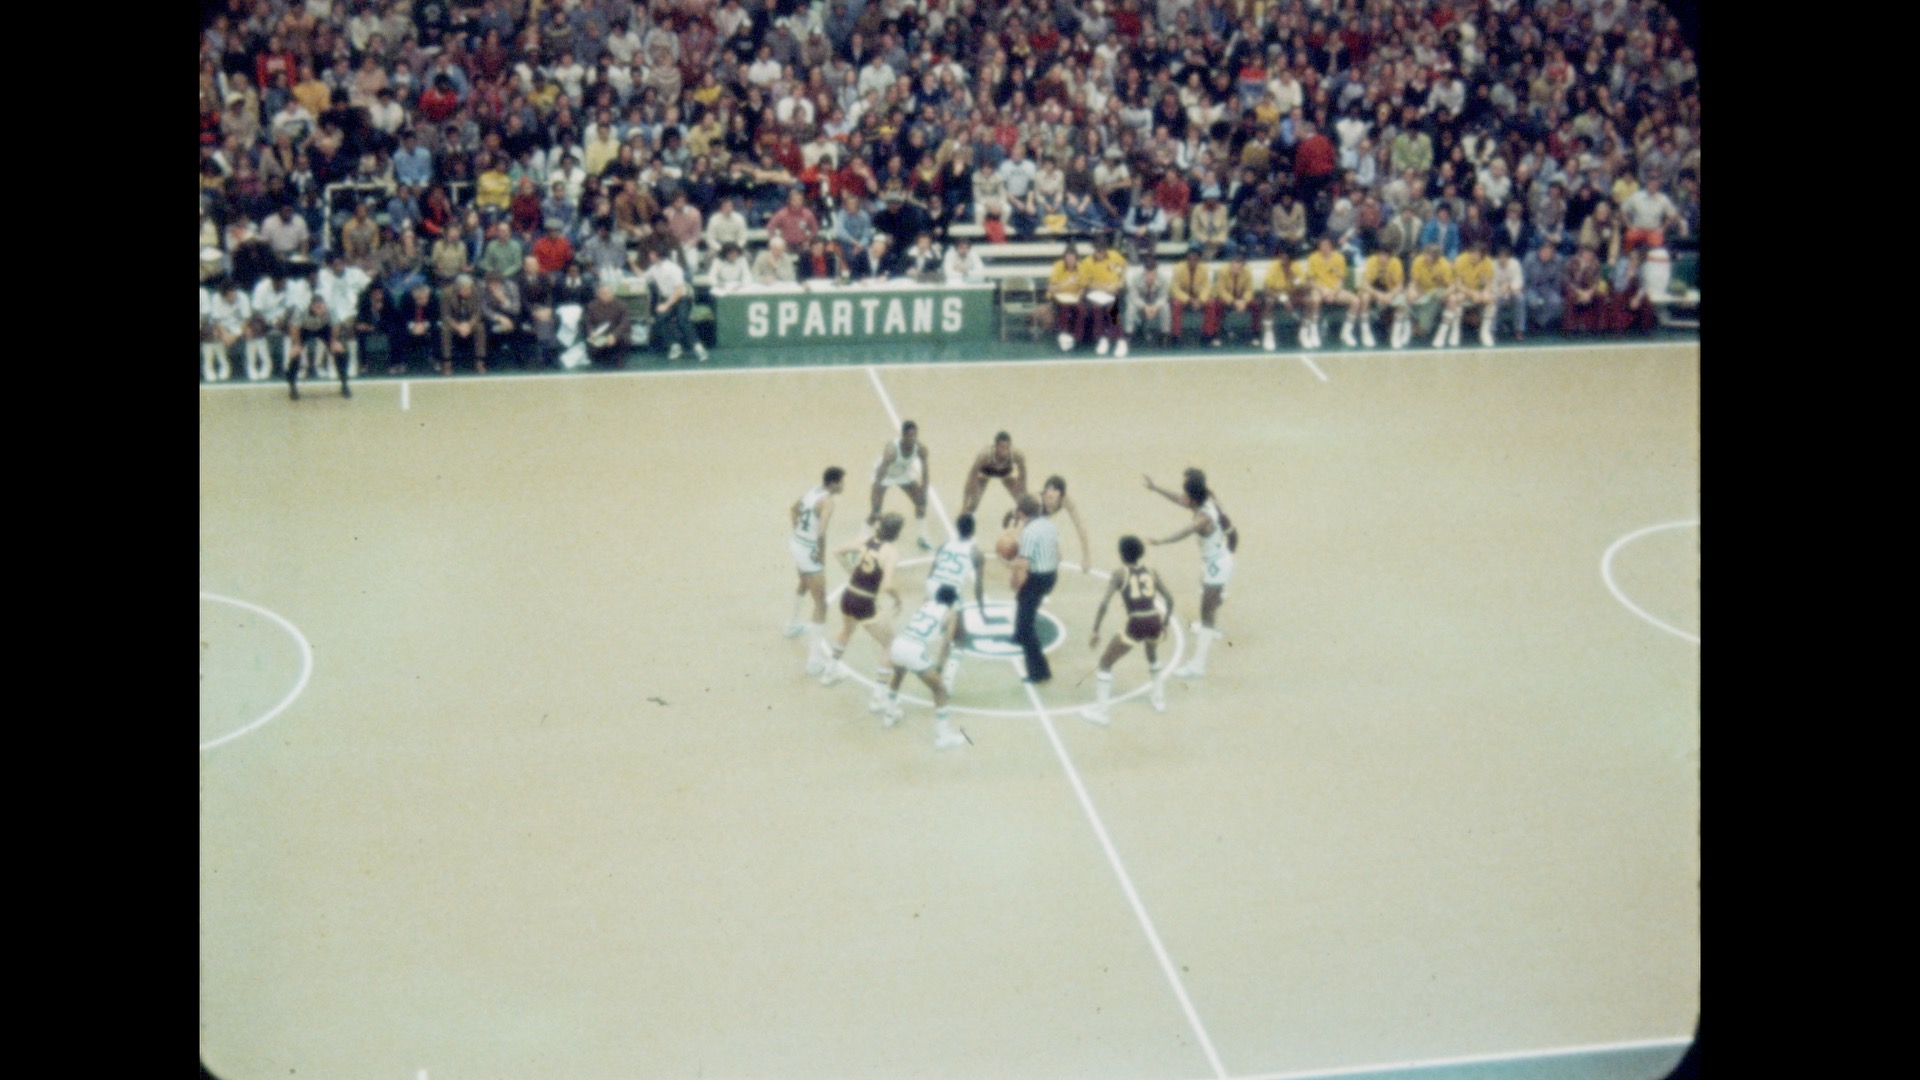 MSU Basketball vs. Central Michigan, 1975